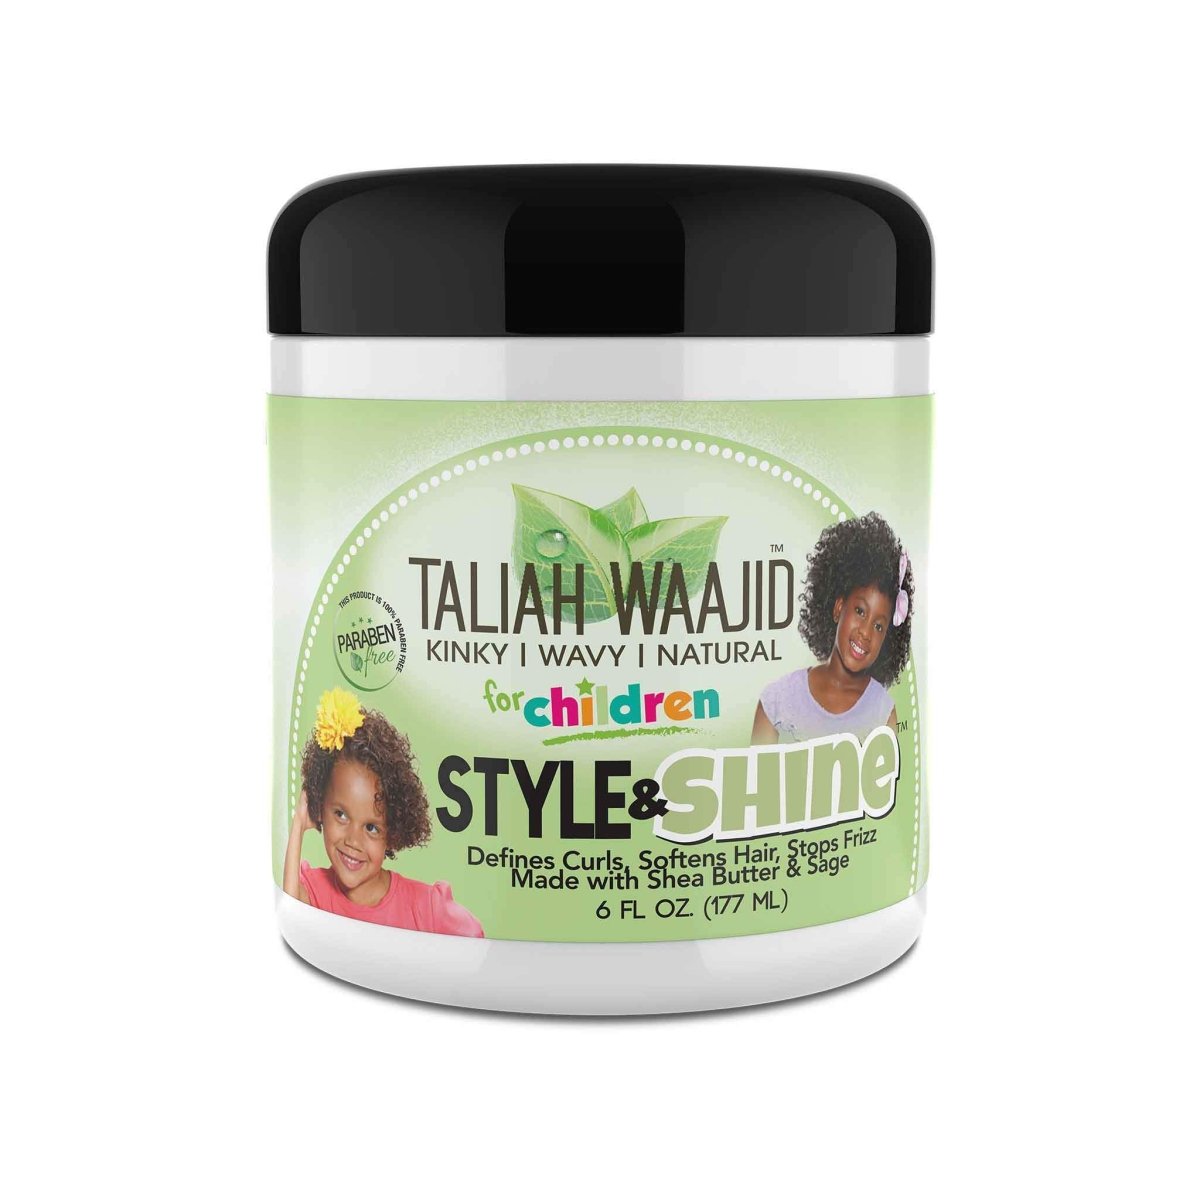 Taliah Waajid Style & Shine 6oz - Southwestsix Cosmetics Taliah Waajid Style & Shine 6oz Styling Gel Taliah Waajid Southwestsix Cosmetics 815680001373 Taliah Waajid Style & Shine 6oz